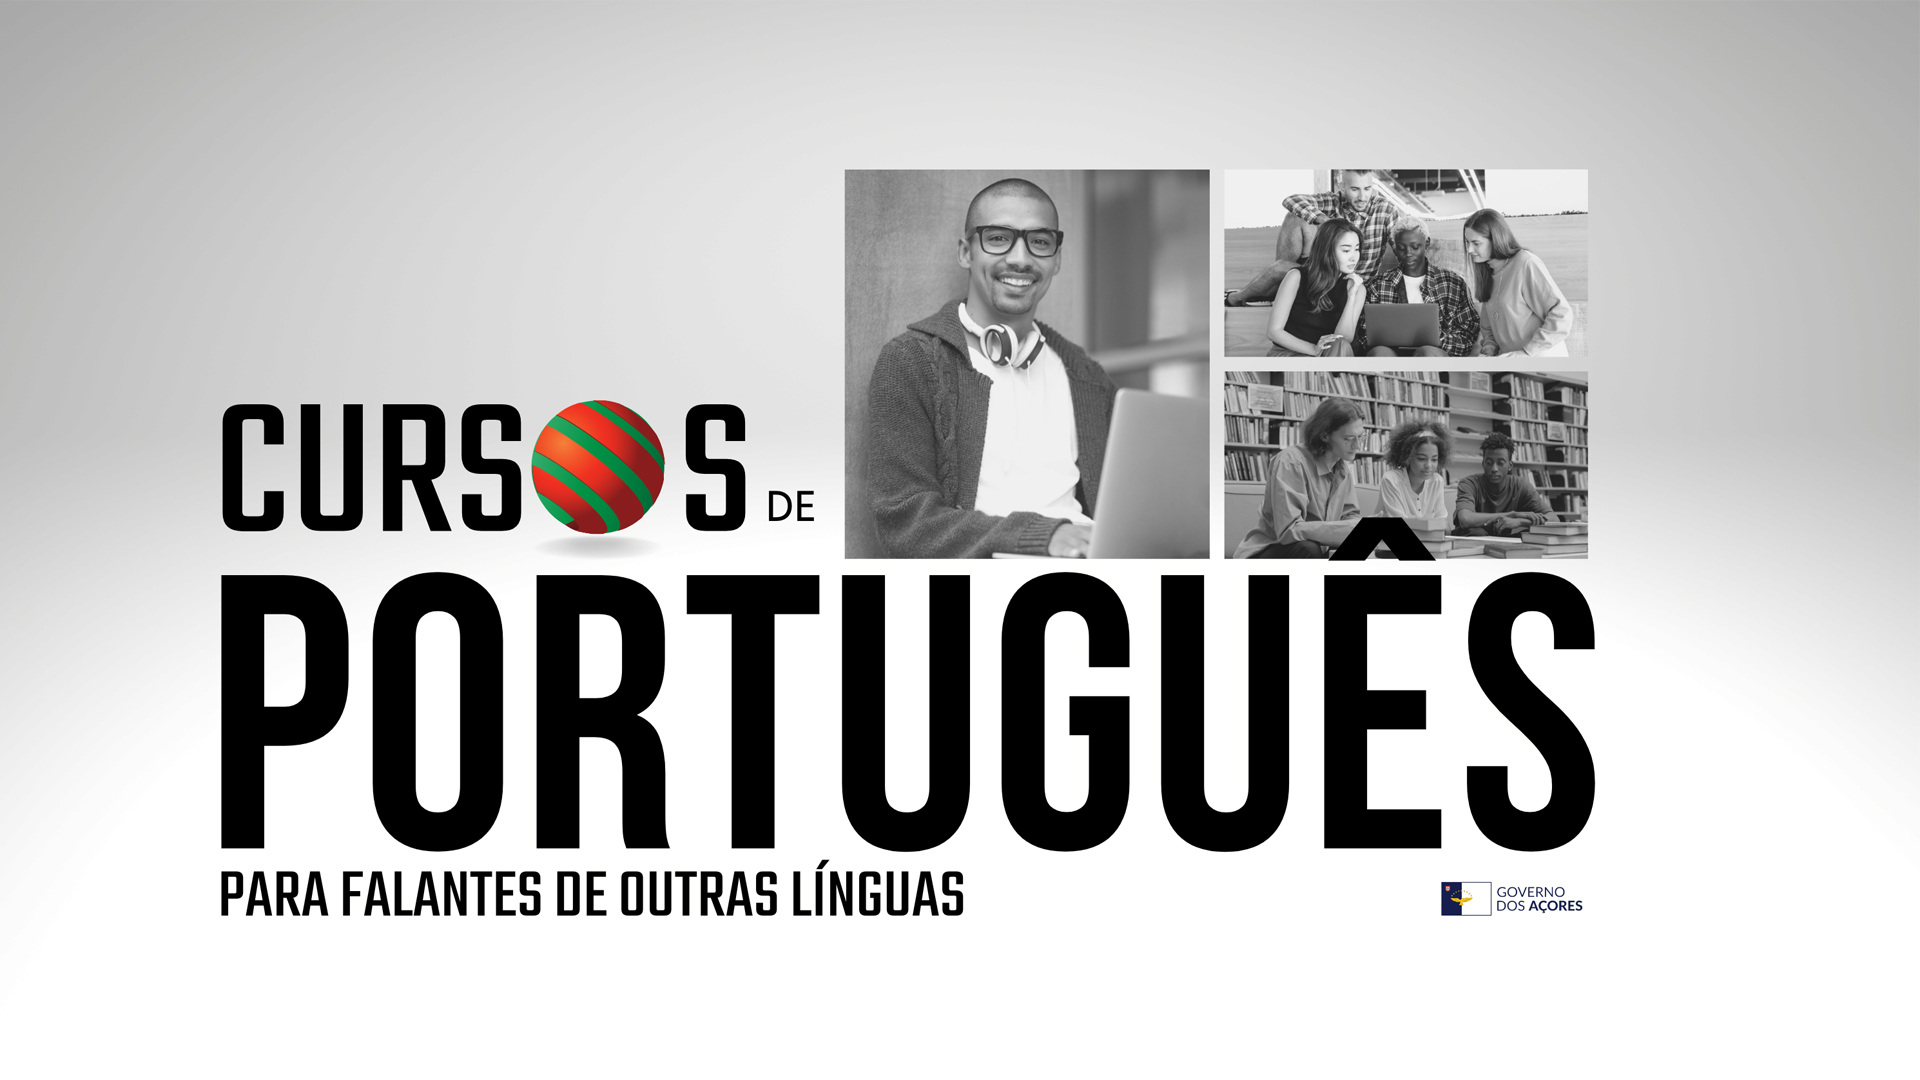 Abertas candidaturas para a organização de Cursos de Português para estrangeiros